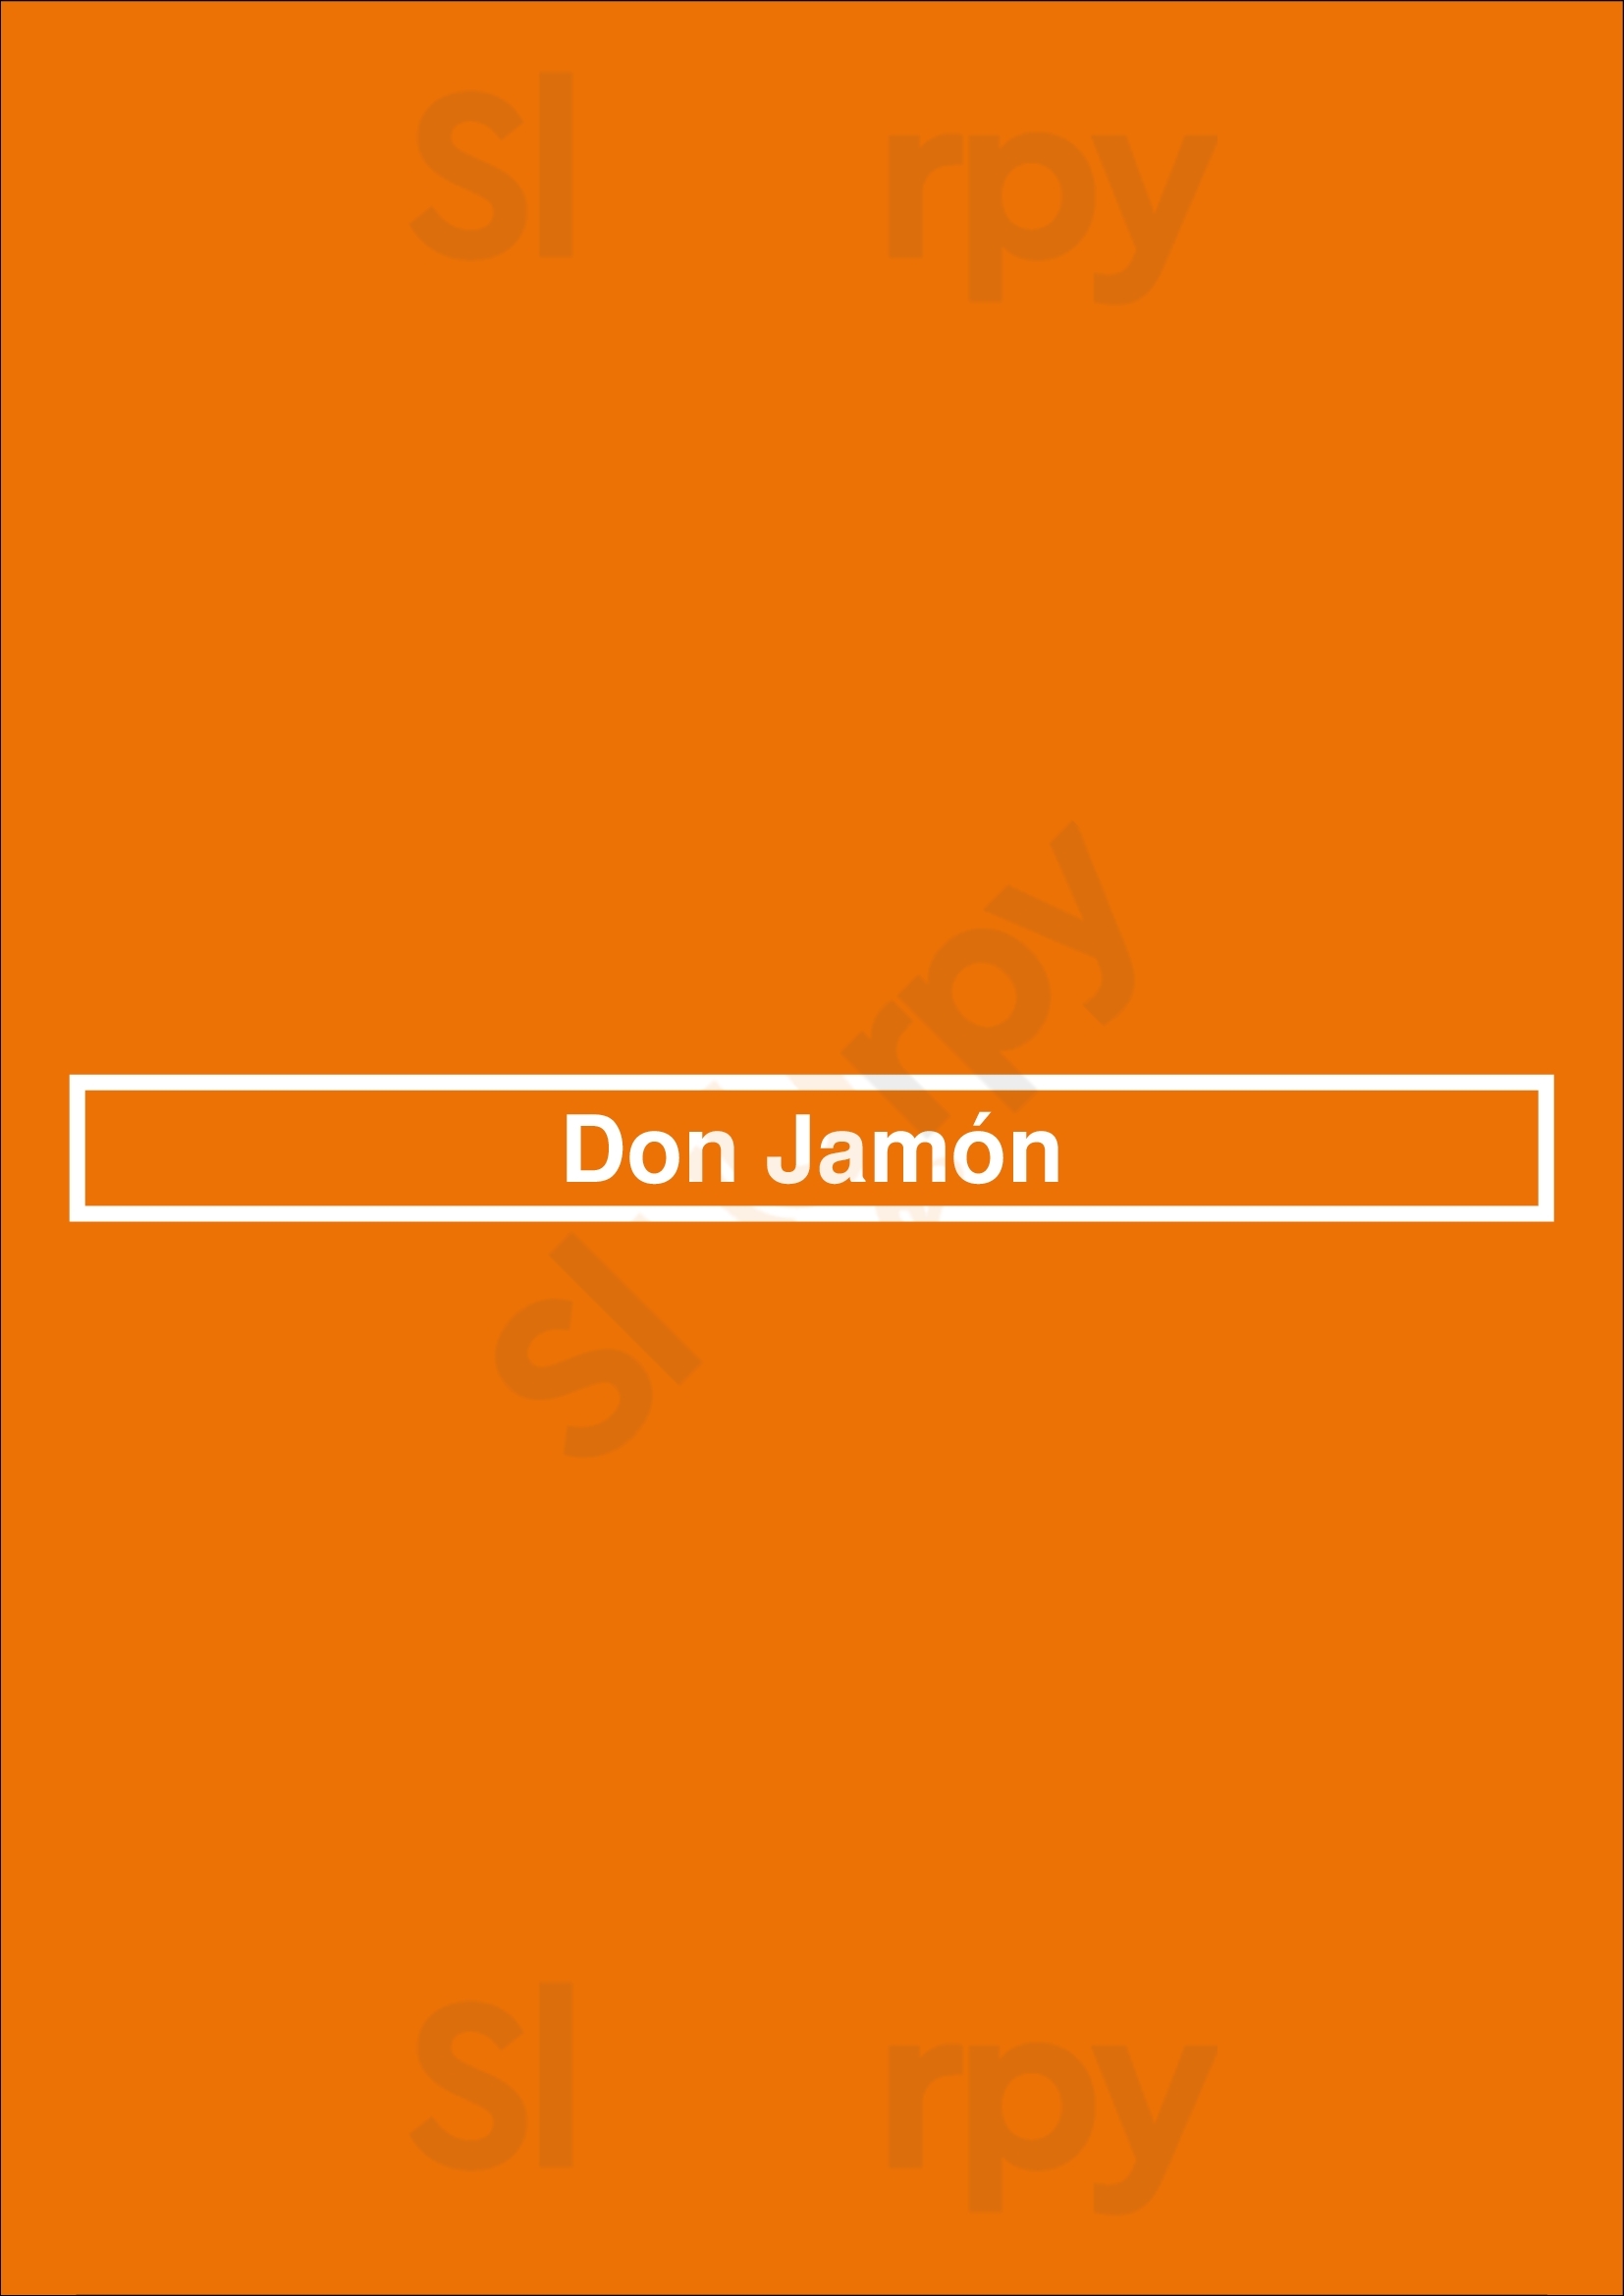 Don Jamón Porto Menu - 1